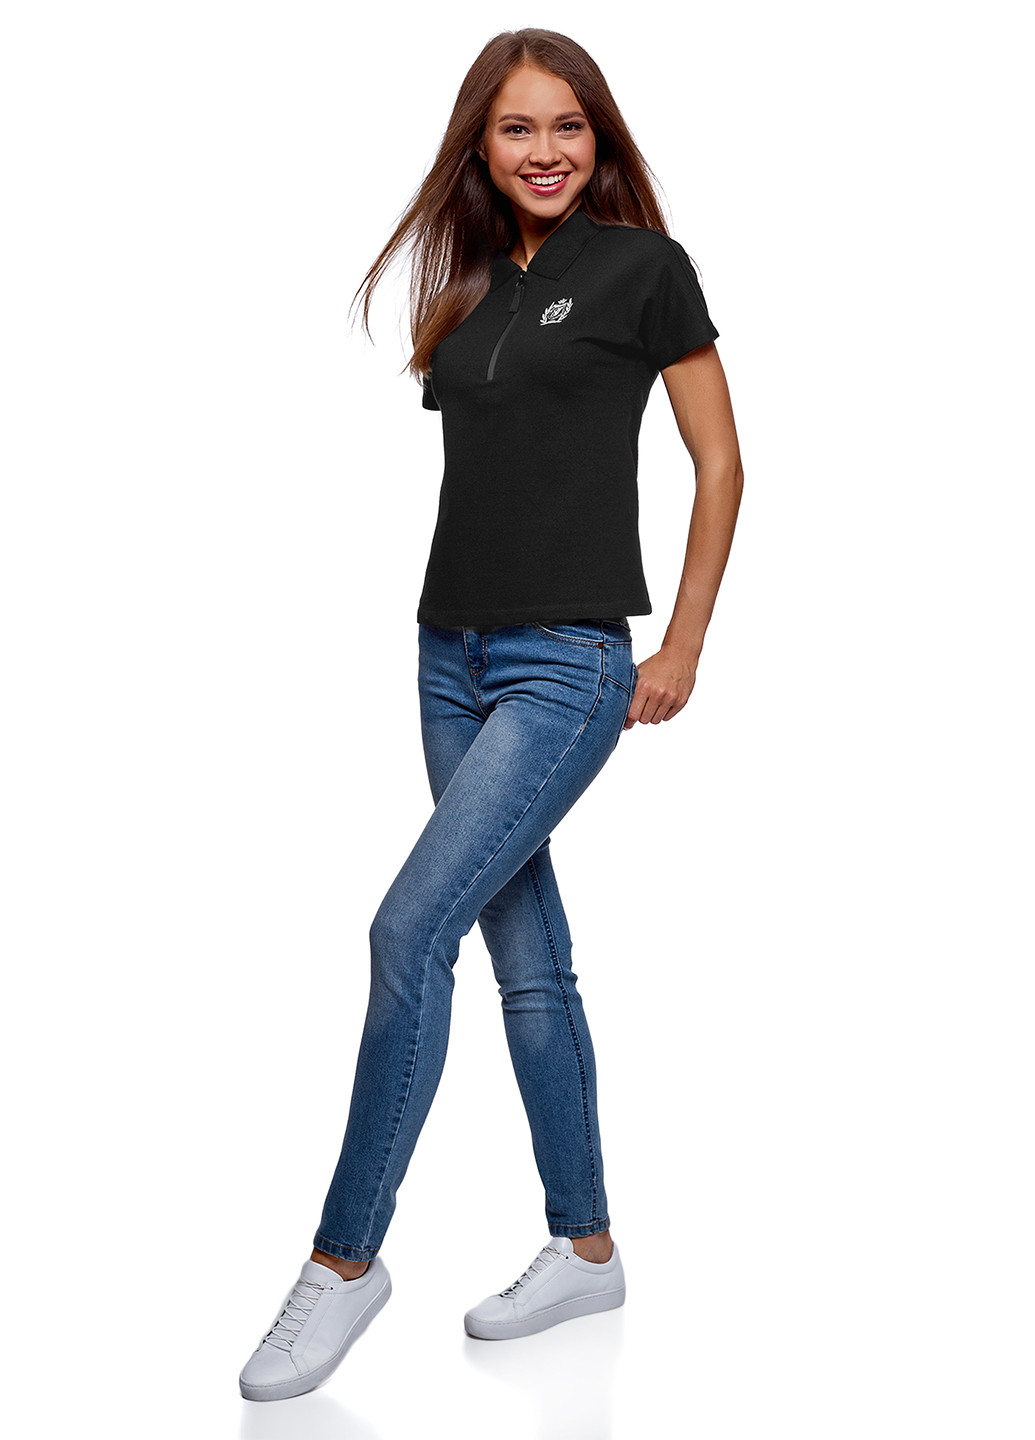 Черная женская футболка-поло Oodji с логотипом